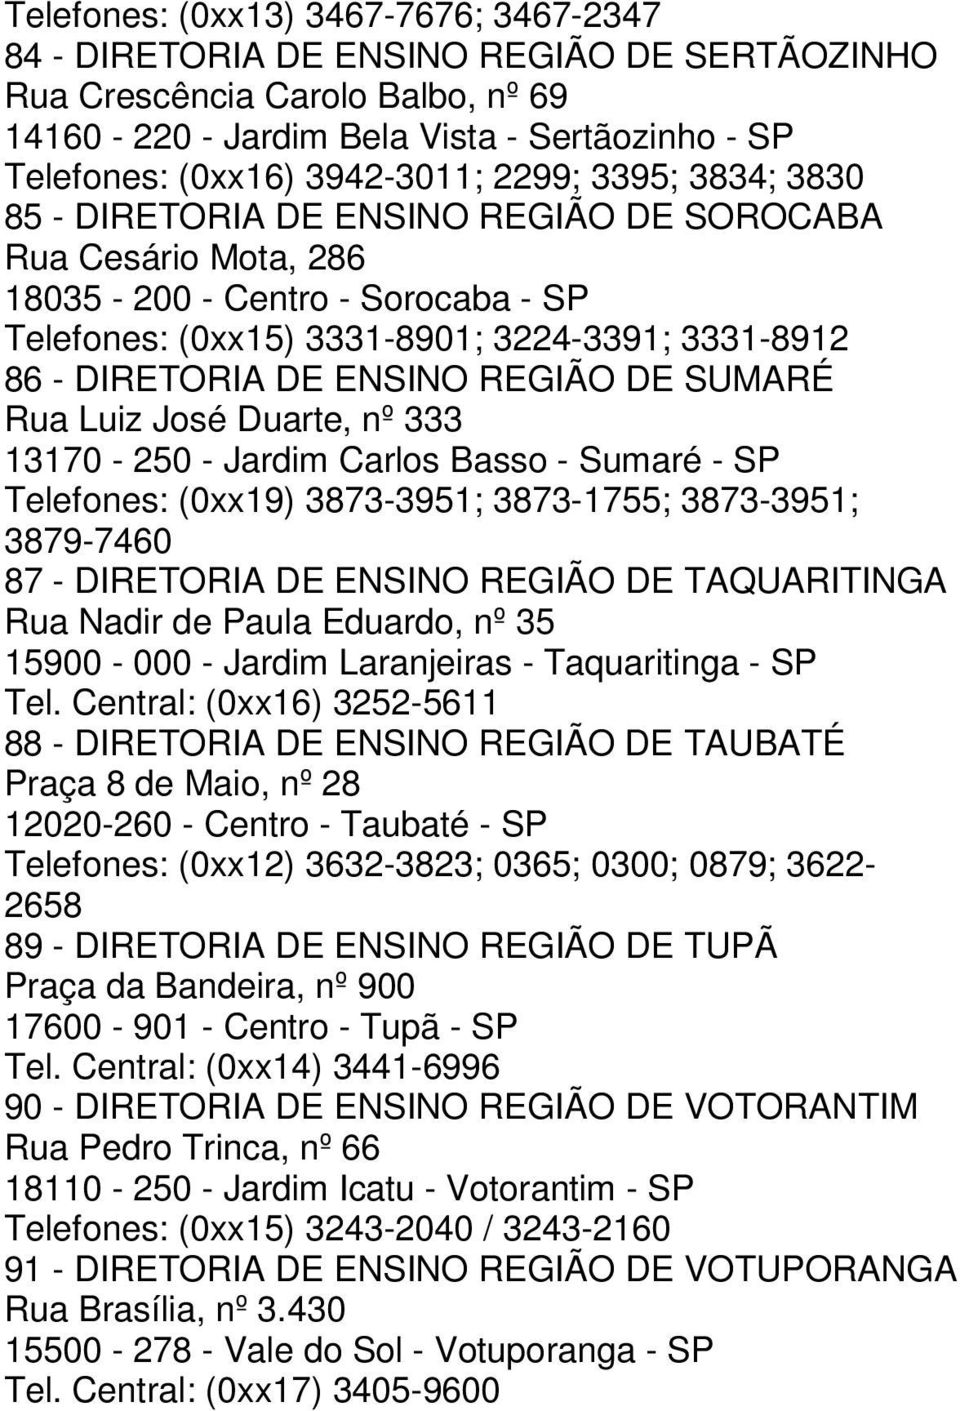 DIRETORIA DE ENSINO REGIÃO DE SUMARÉ Rua Luiz José Duarte, nº 333 13170-250 - Jardim Carlos Basso - Sumaré - SP Telefones: (0xx19) 3873-3951; 3873-1755; 3873-3951; 3879-7460 87 - DIRETORIA DE ENSINO